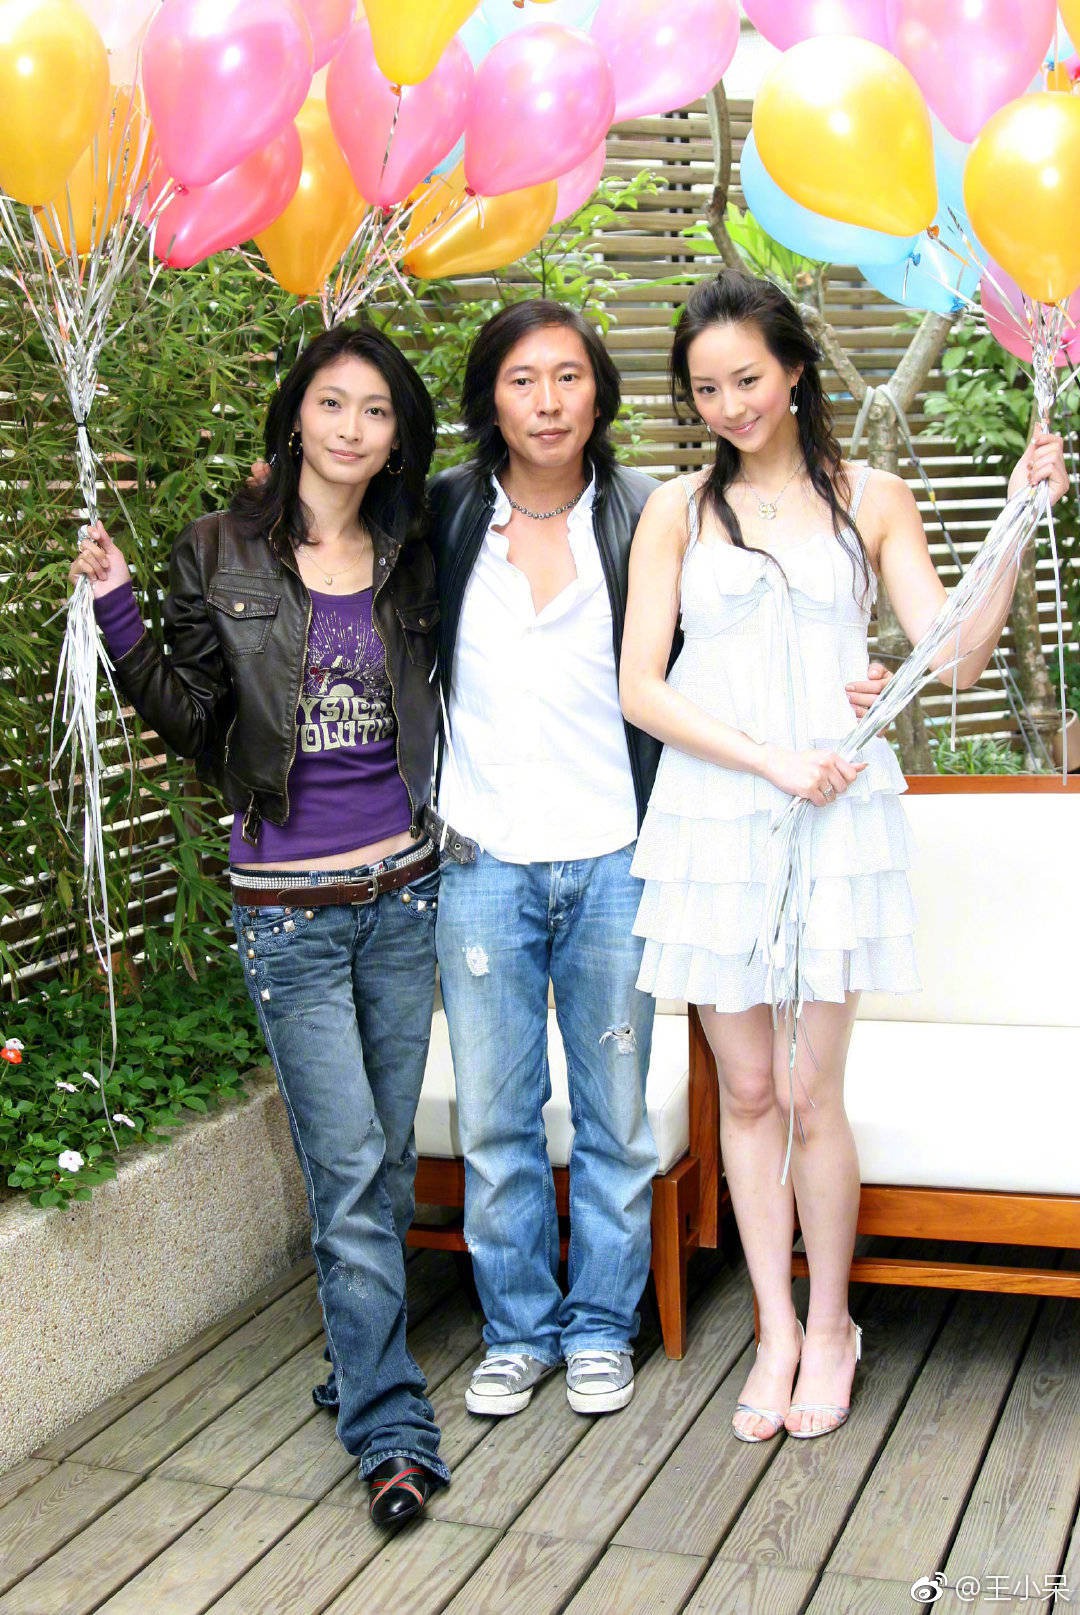 Mỹ nhân Vườn Sao Băng bị nam diễn viên Bao Thanh Thiên ép khoả thân 5 tiếng để đóng cảnh giường chiếu - Ảnh 3.